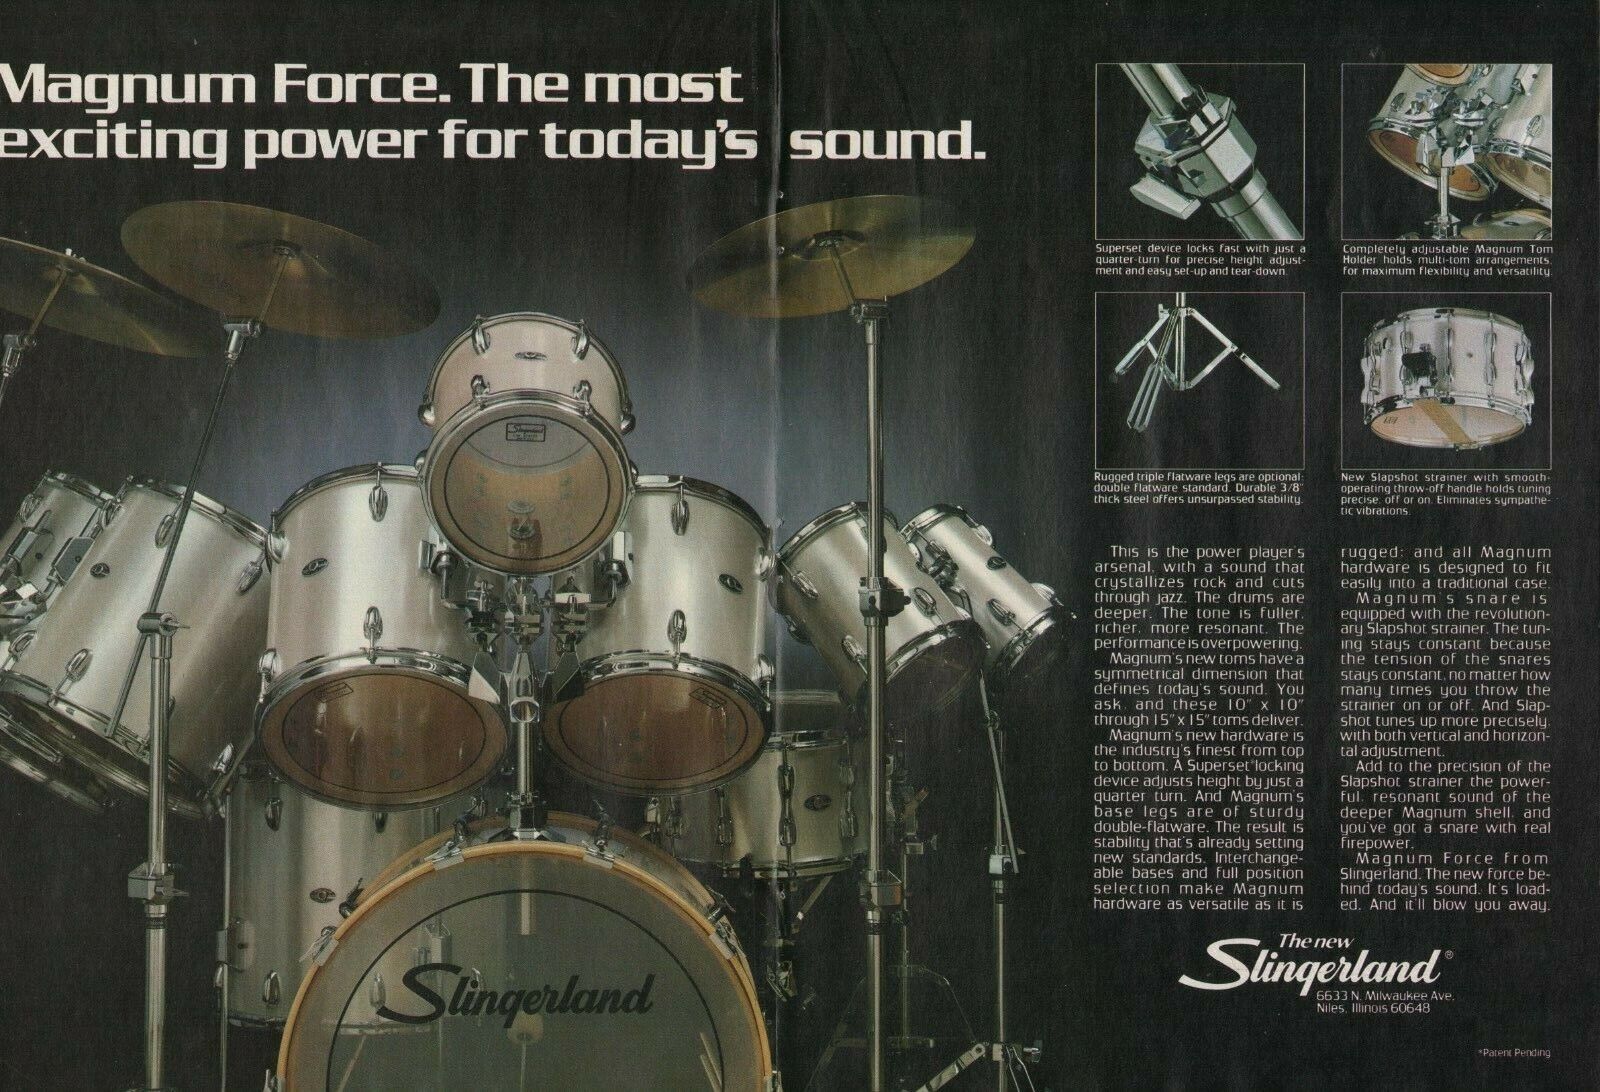 1983 2pg Print Ad of Slingerland Magnum Force Drum Kit